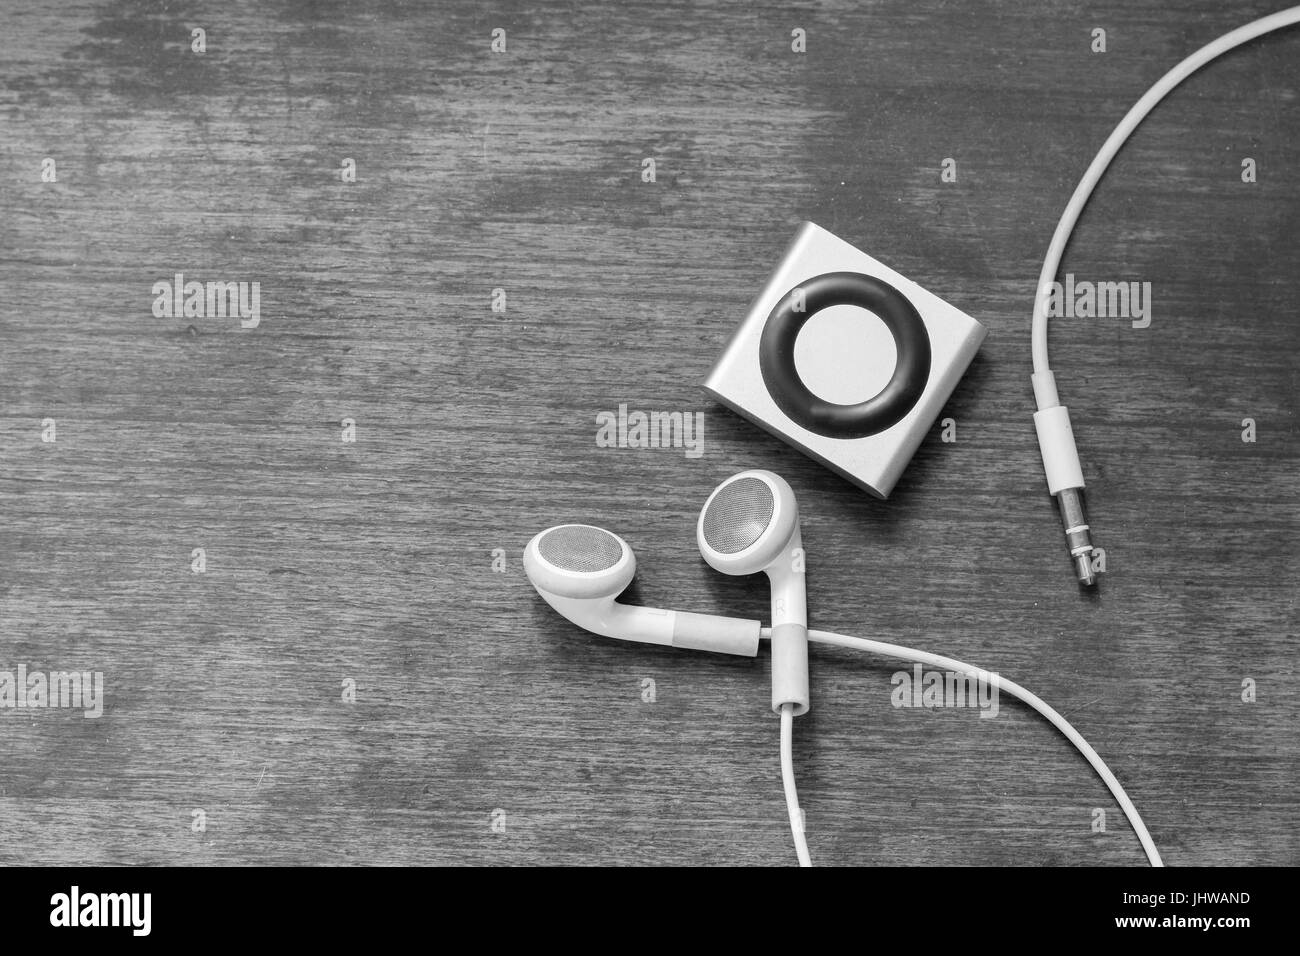 Sullo sfondo di un lettore digitale di musica con auricolari sdraiato sul pavimento in legno, il concetto di musica e stile di vita creativa, teens Foto Stock